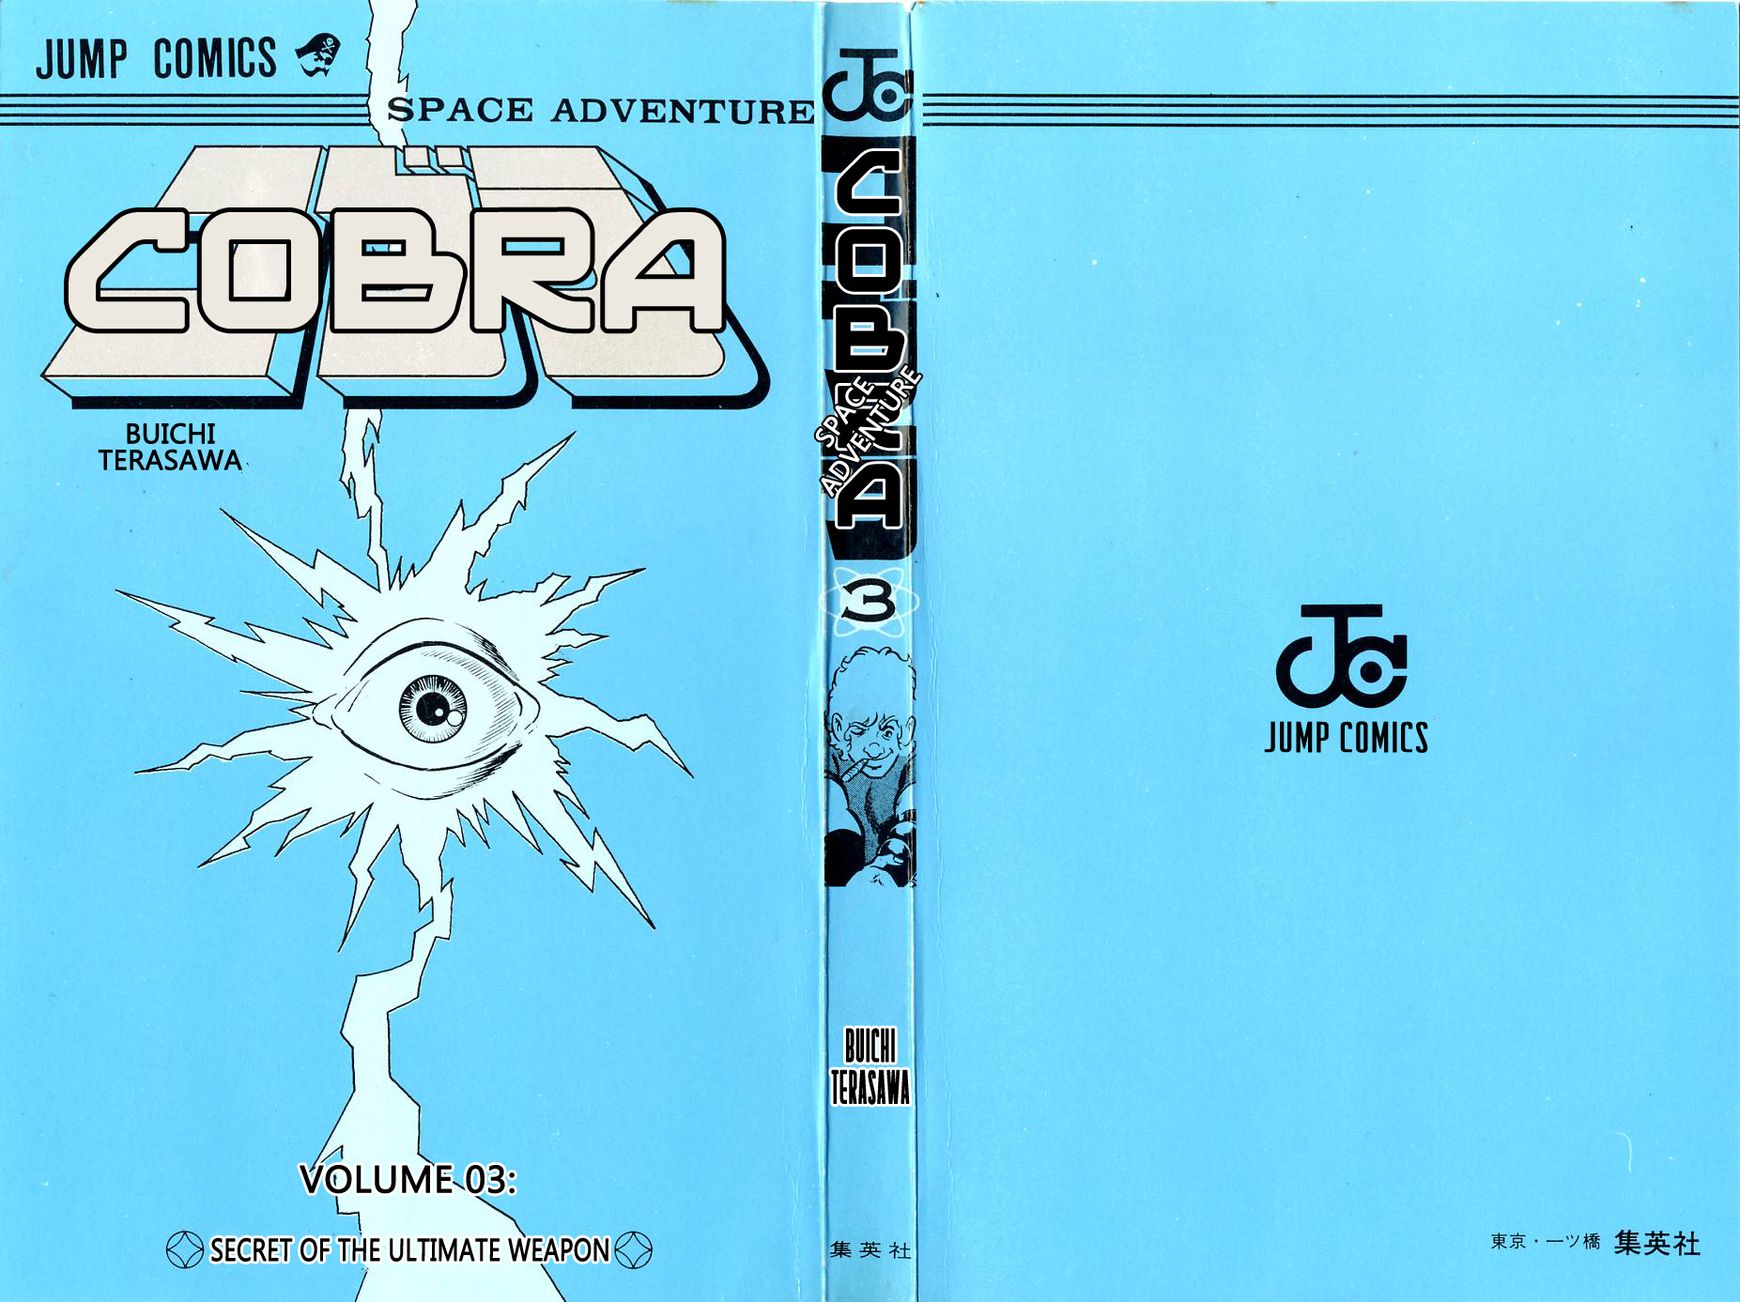 Space Adventure Cobra 3